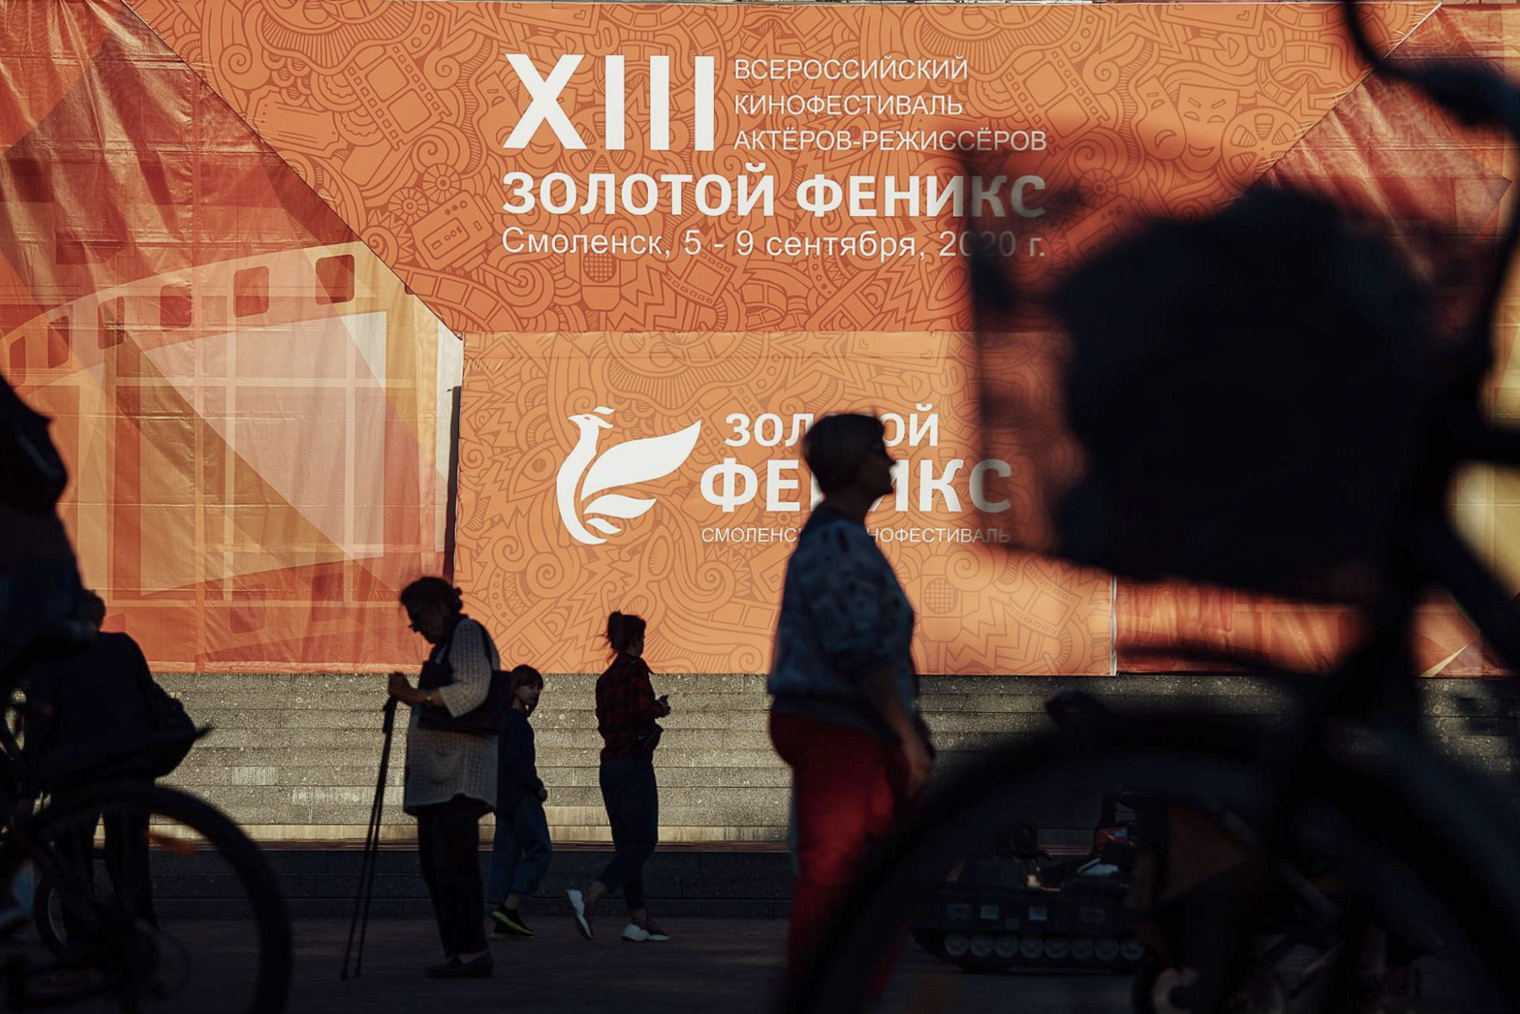 Фасад кинотеатра «Современник», главной фестивальной площадки, к открытию обязательно преображается